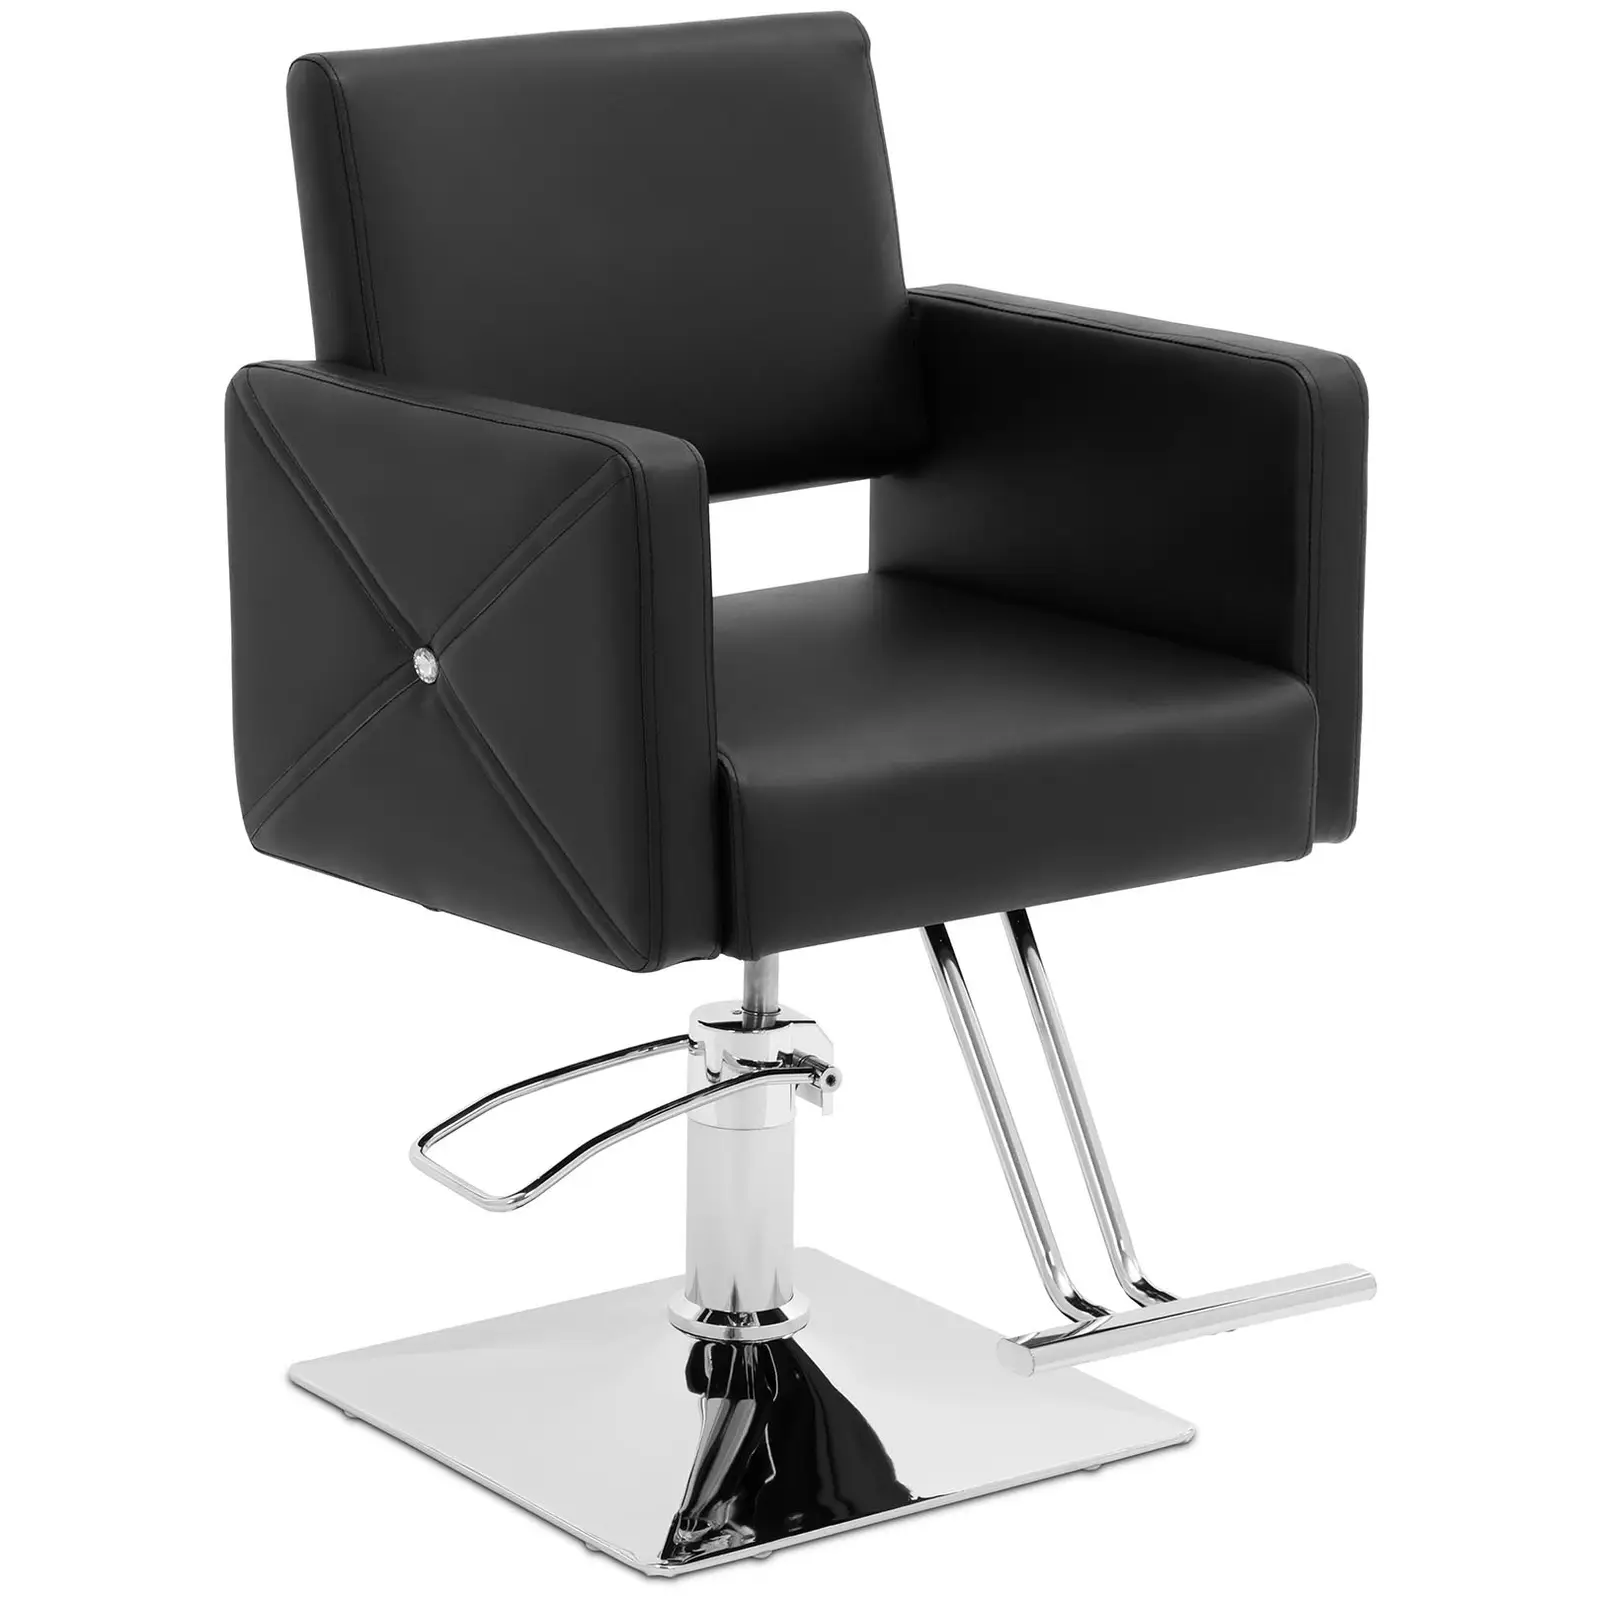 Scaun de salon Carlisle cu suport pentru picioare - înălțime scaun 45 - 55 cm - 150 kg - negru